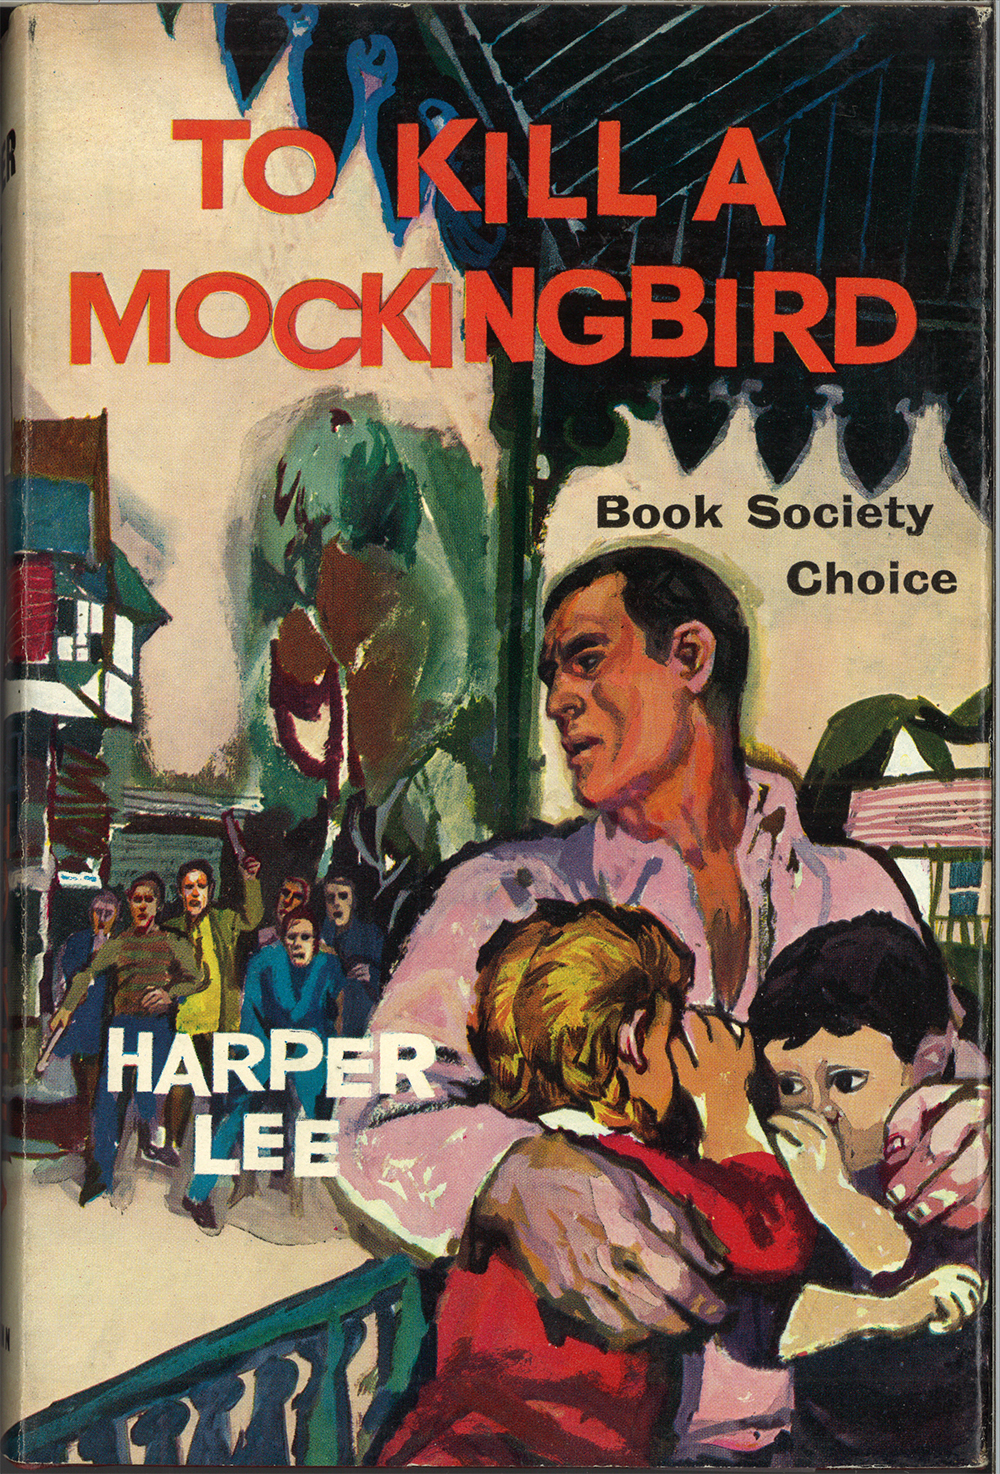 To Kill A Mockingbird, Harper Lee, 1960